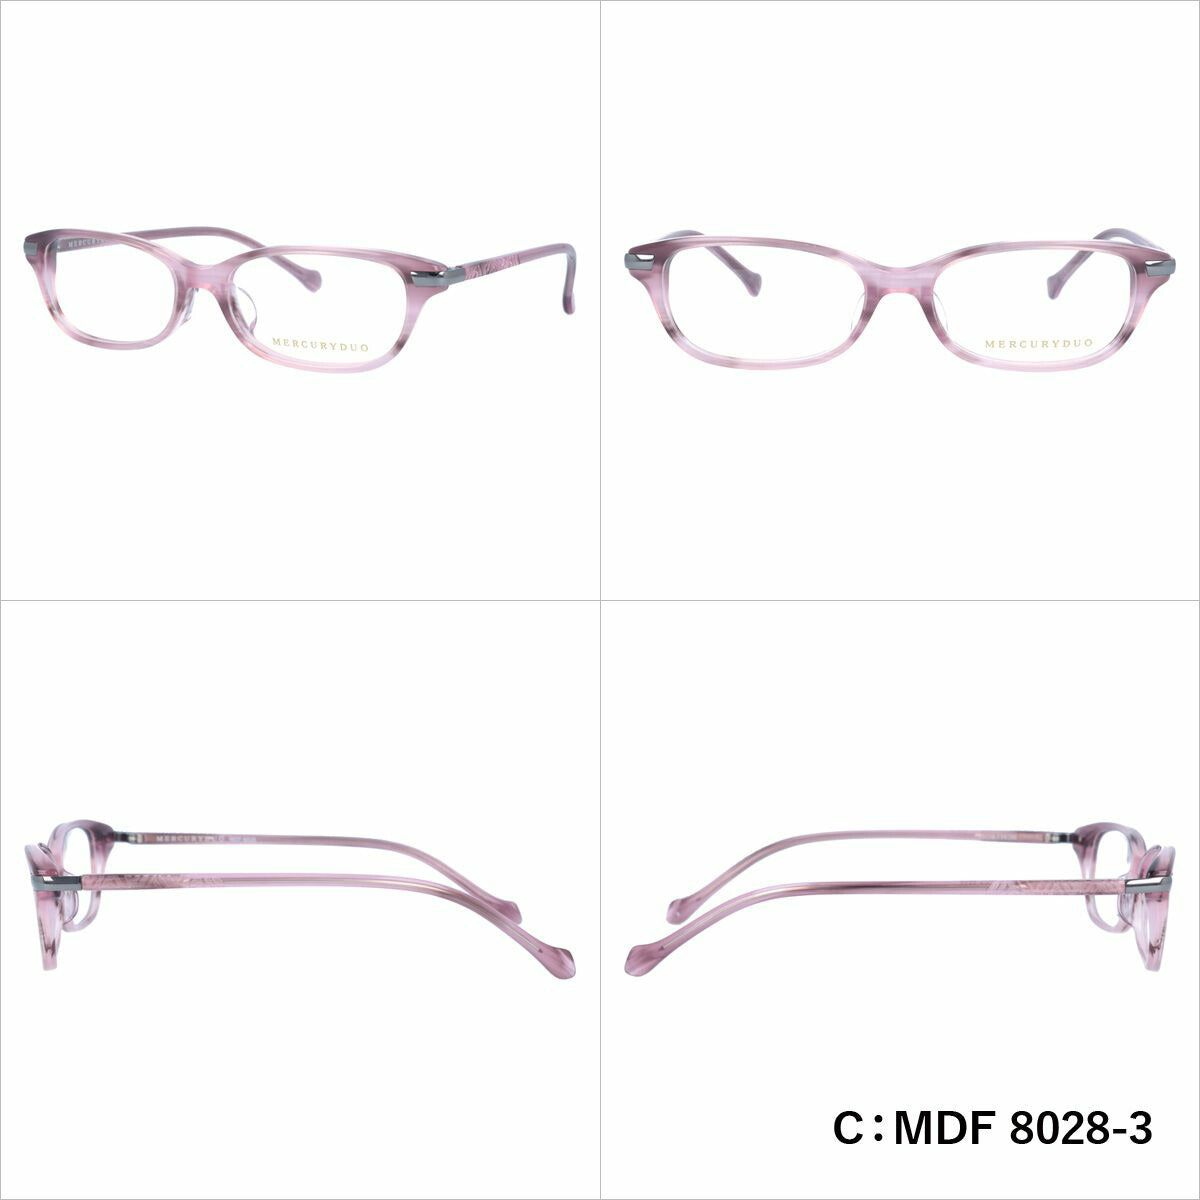 マーキュリーデュオ リーディンググラス フレーム レディース ブランド 度付き 度入り メガネ 眼鏡 アジアンフィット MERCURYDUO MDF 8026-4 / MDF 8027-4 / MDF 8028-3 レディース 女性 プレゼント